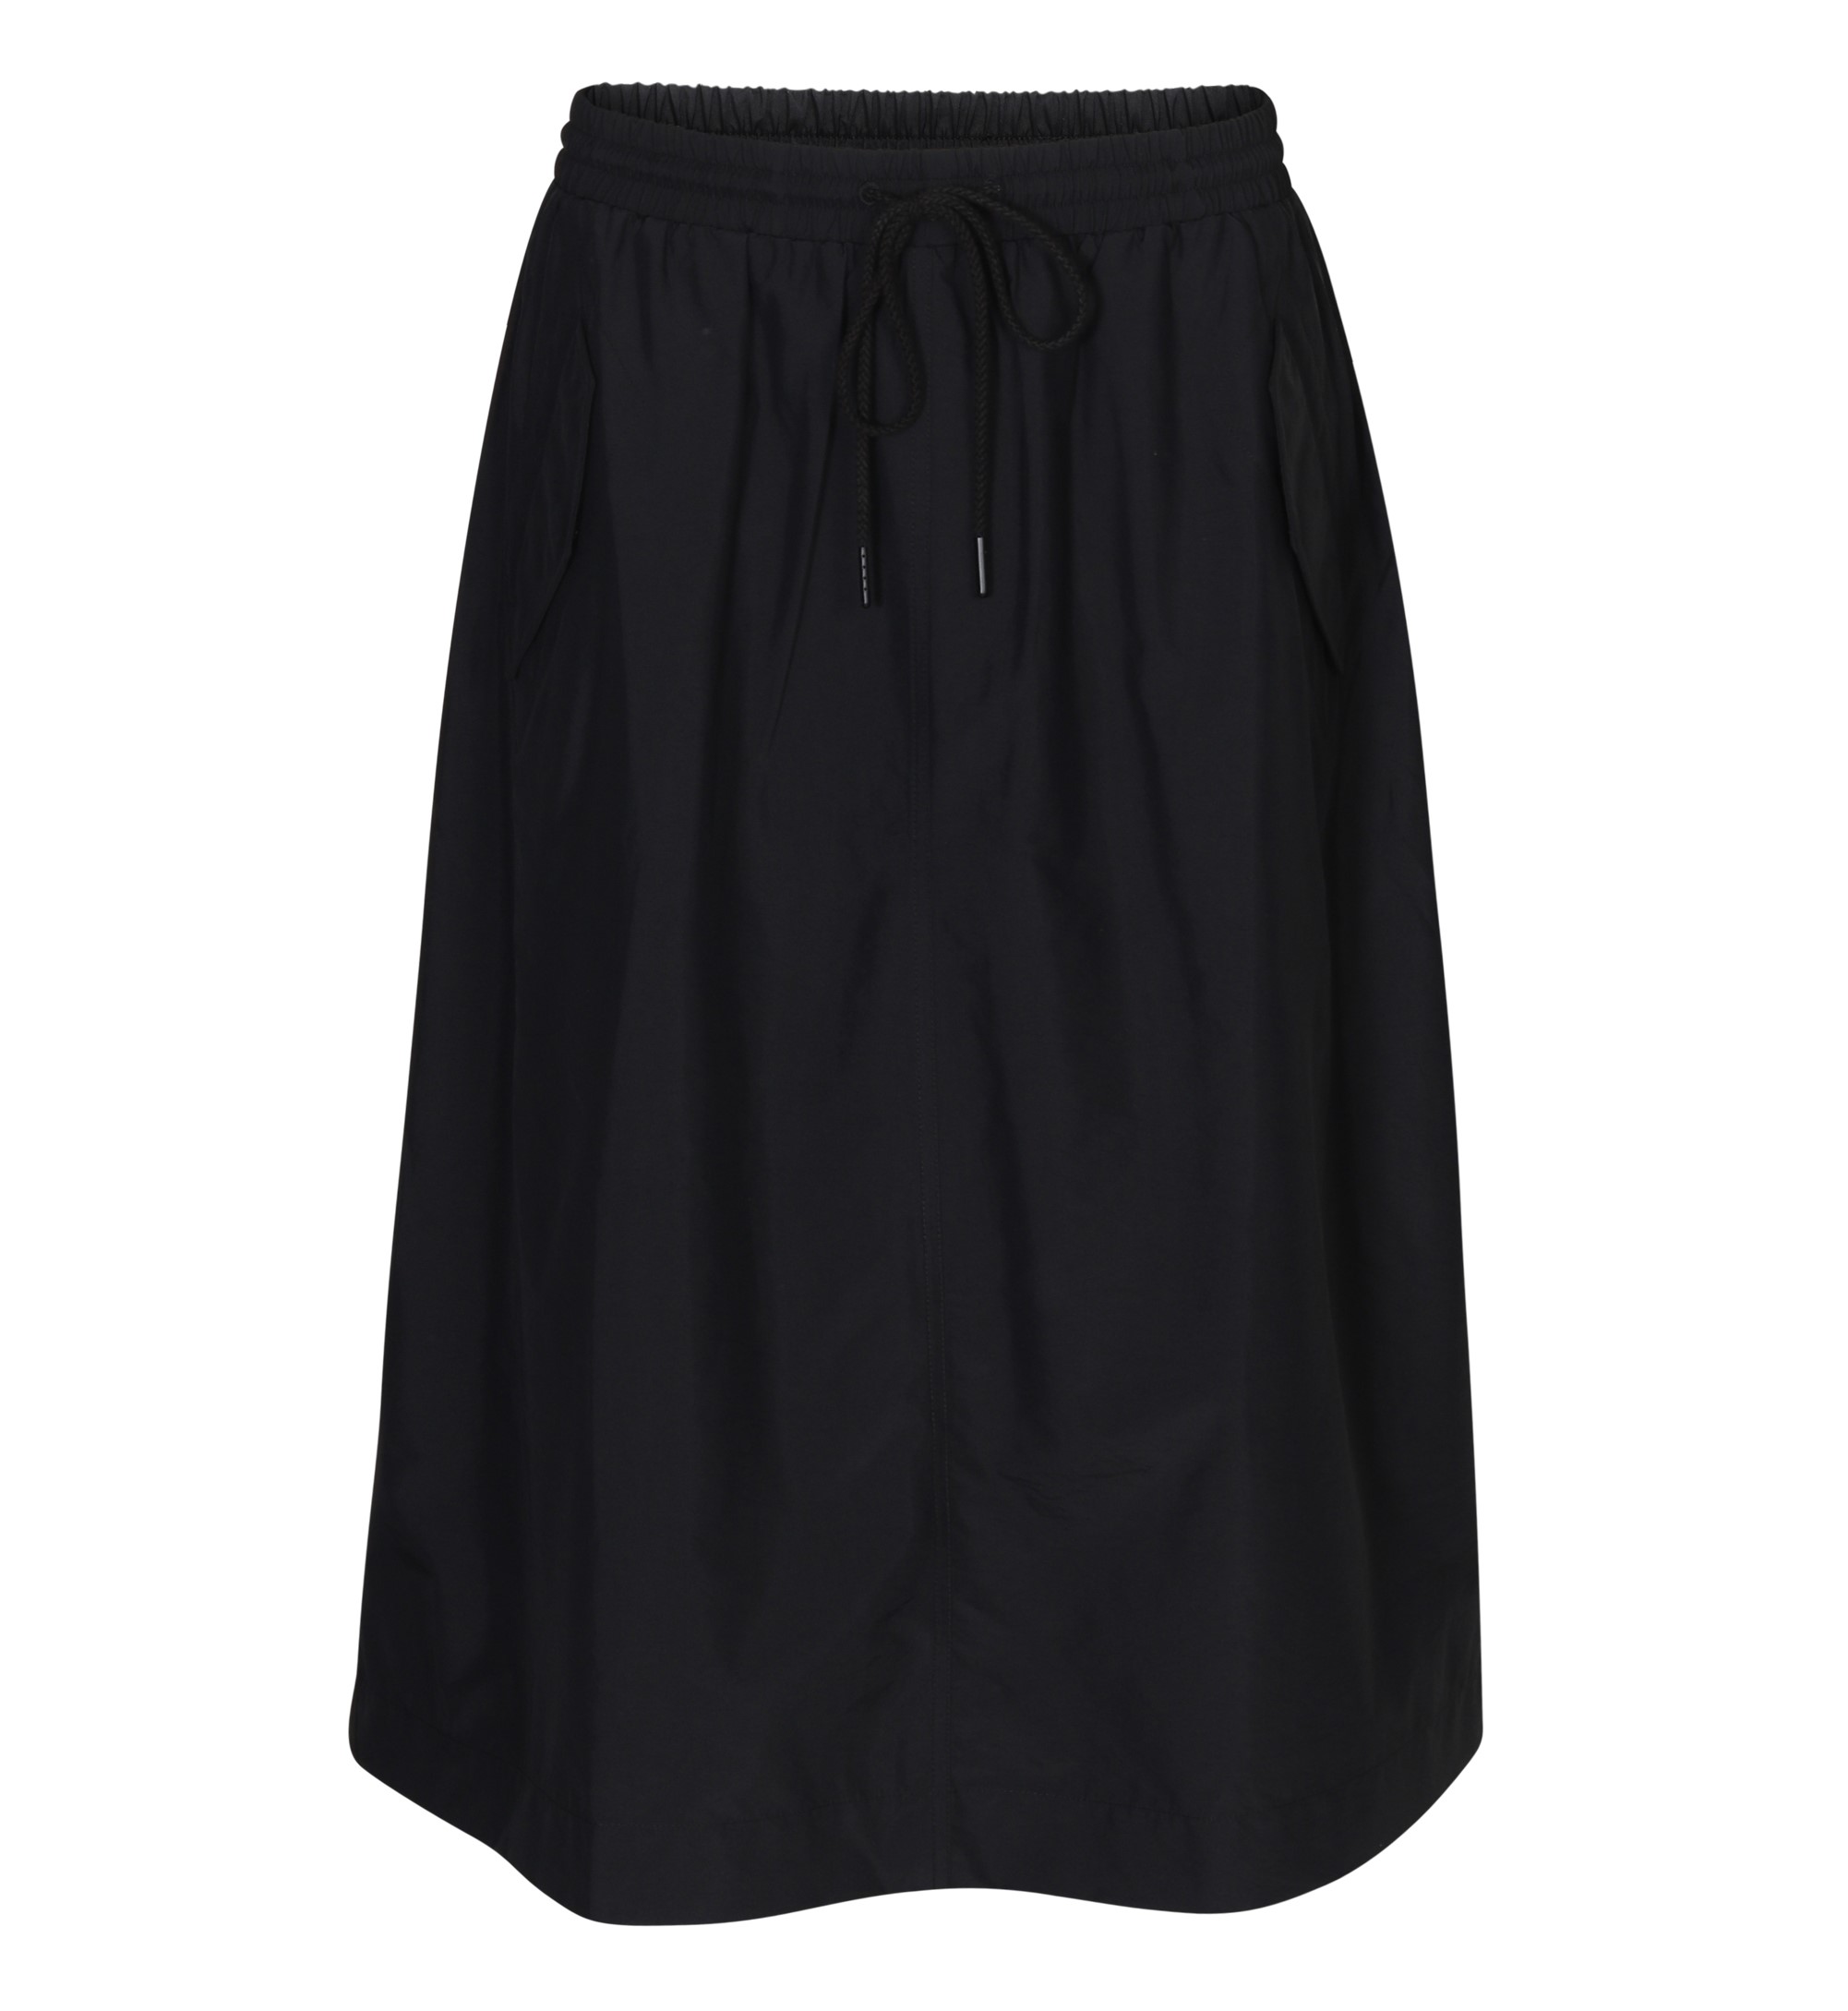 6397 Nylon Skirt in Black S